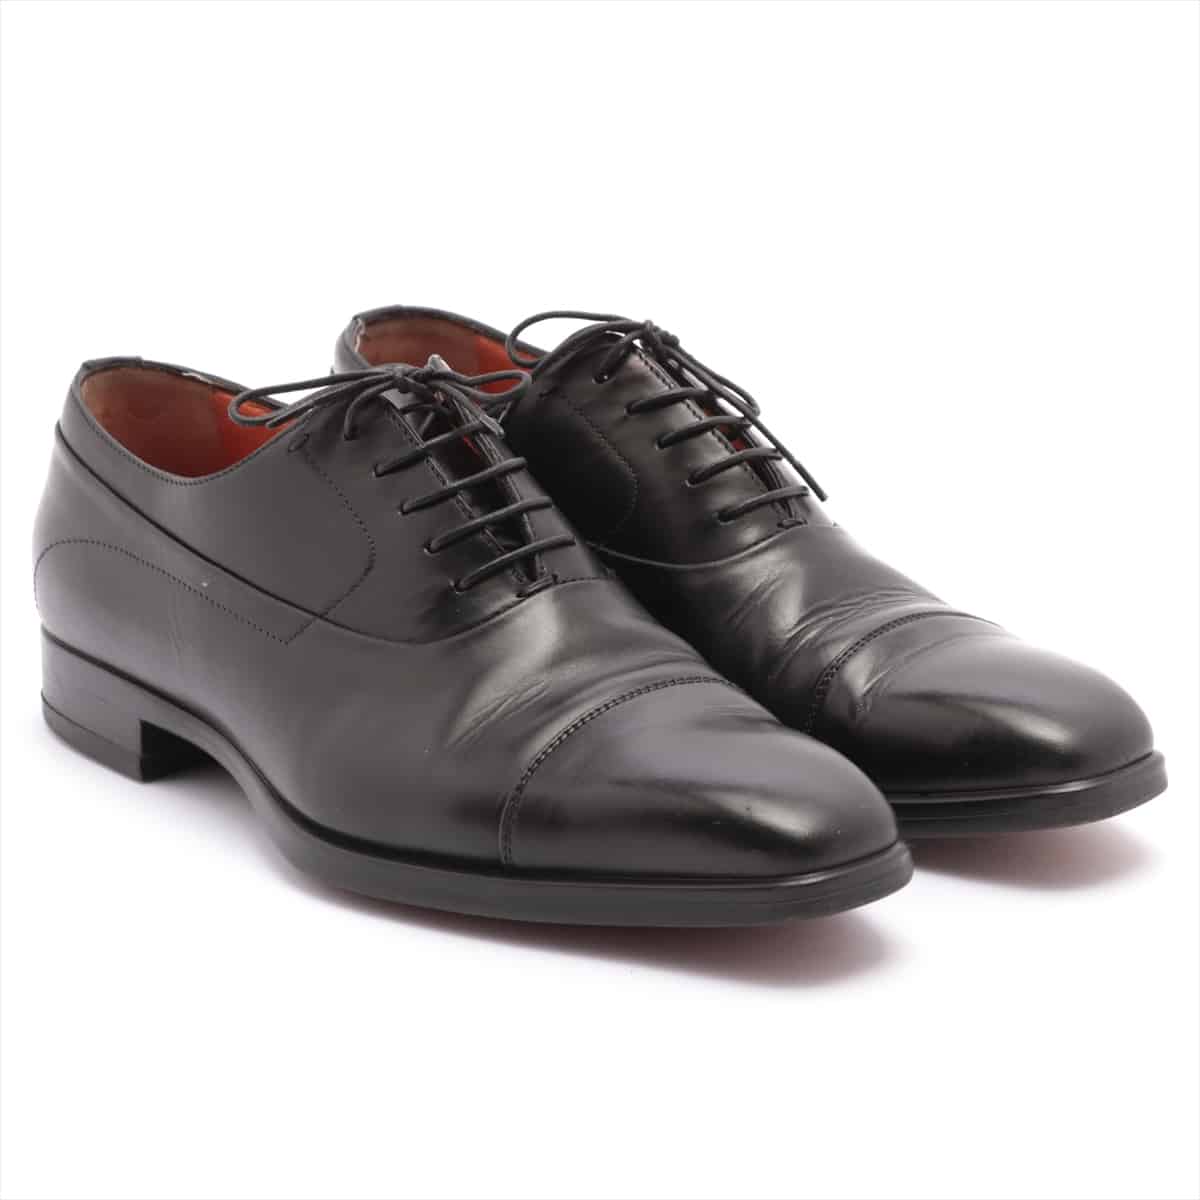 Santoni Leather Leather shoes 6 Men's Black